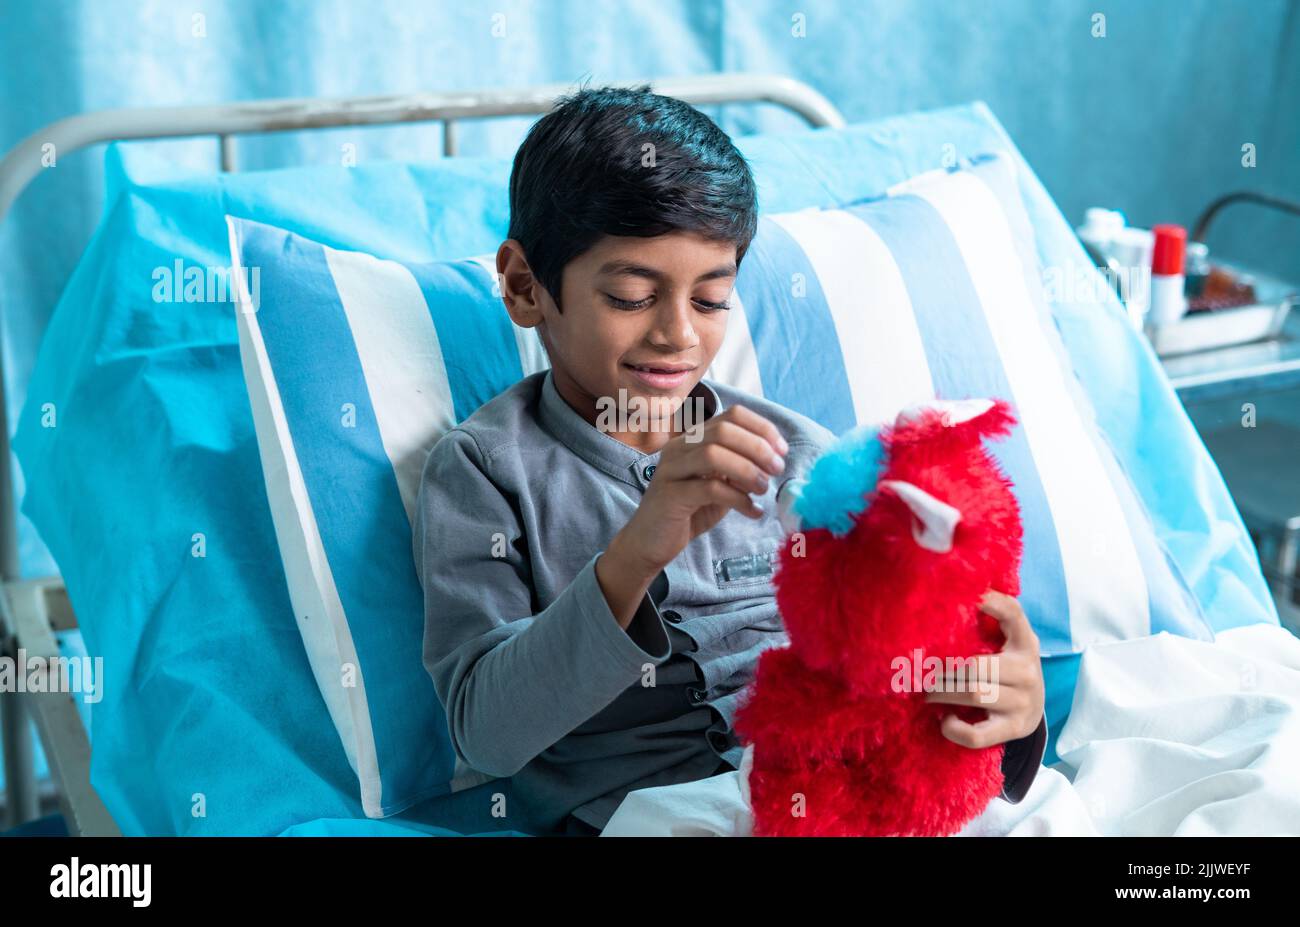 Niños enfermos felices jugando con oso de peluche en la sala del hospital - concepto de felicidad, estilo de vida de la infancia y tratamiento. Foto de stock